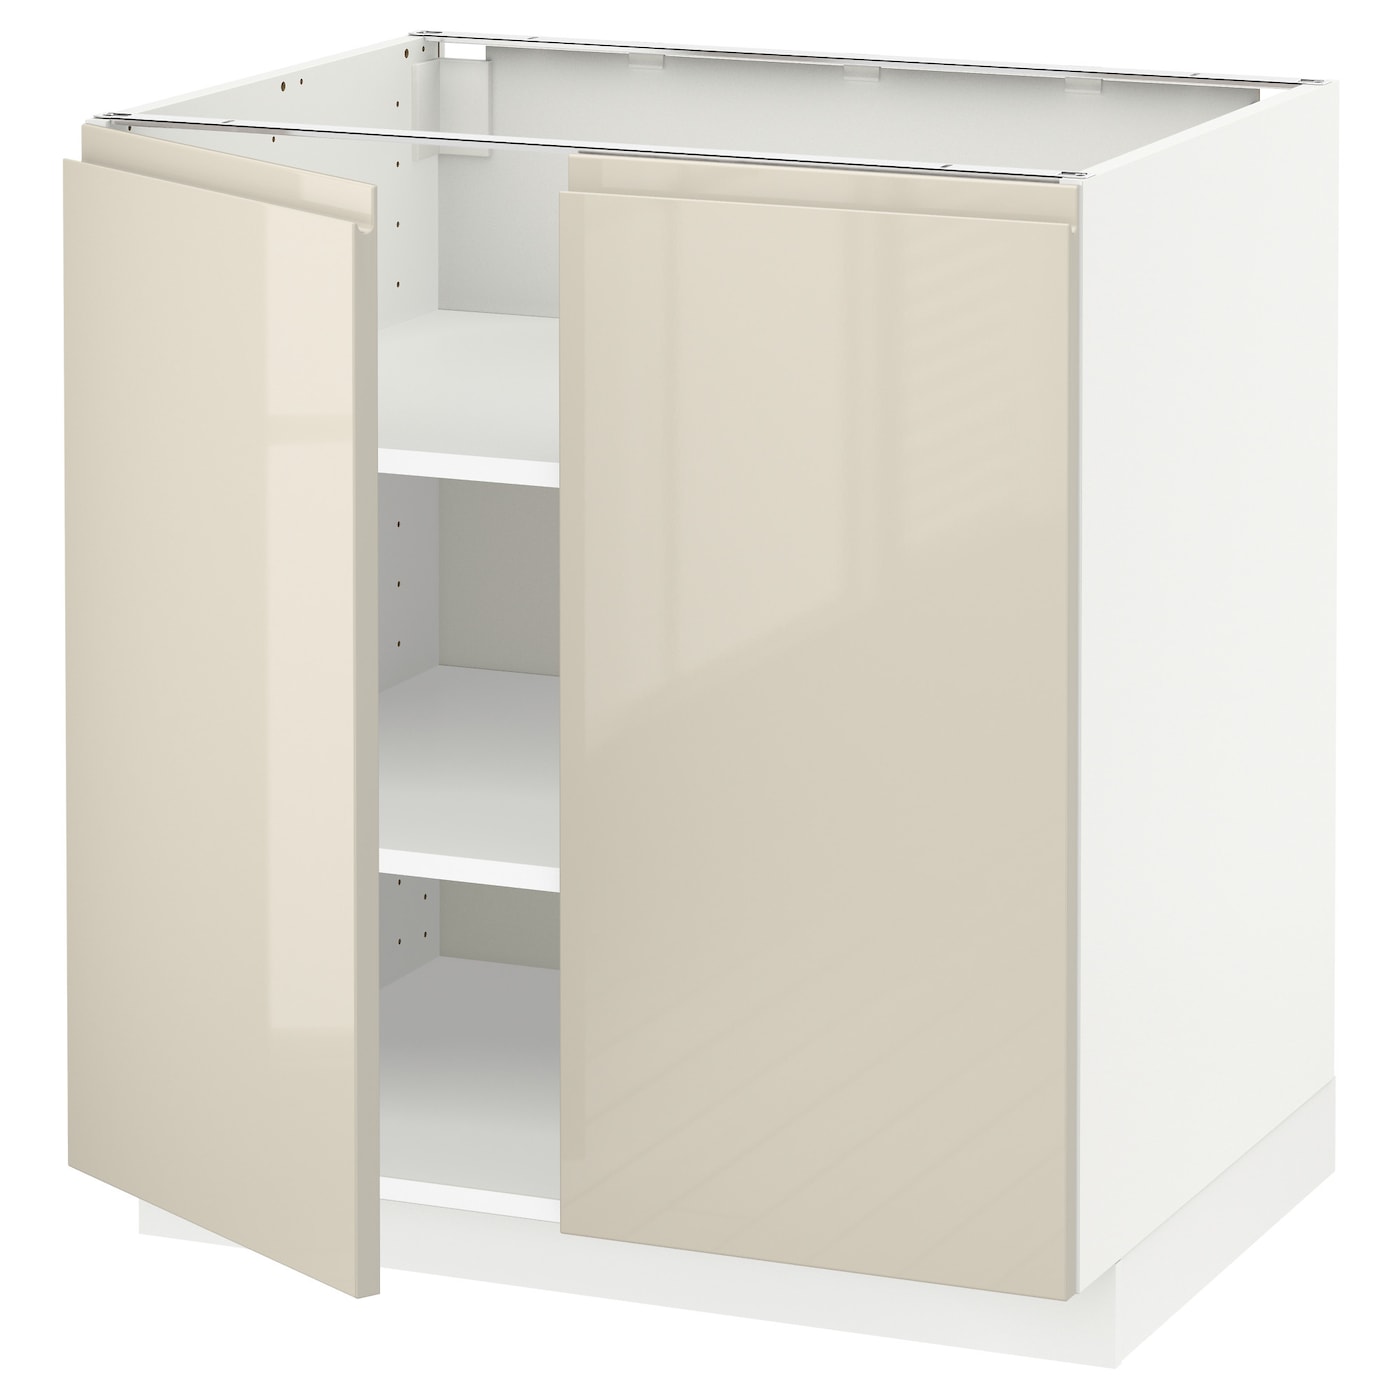 Напольный шкаф - IKEA METOD, 88x62x80см, белый/бежевый, МЕТОД ИКЕА